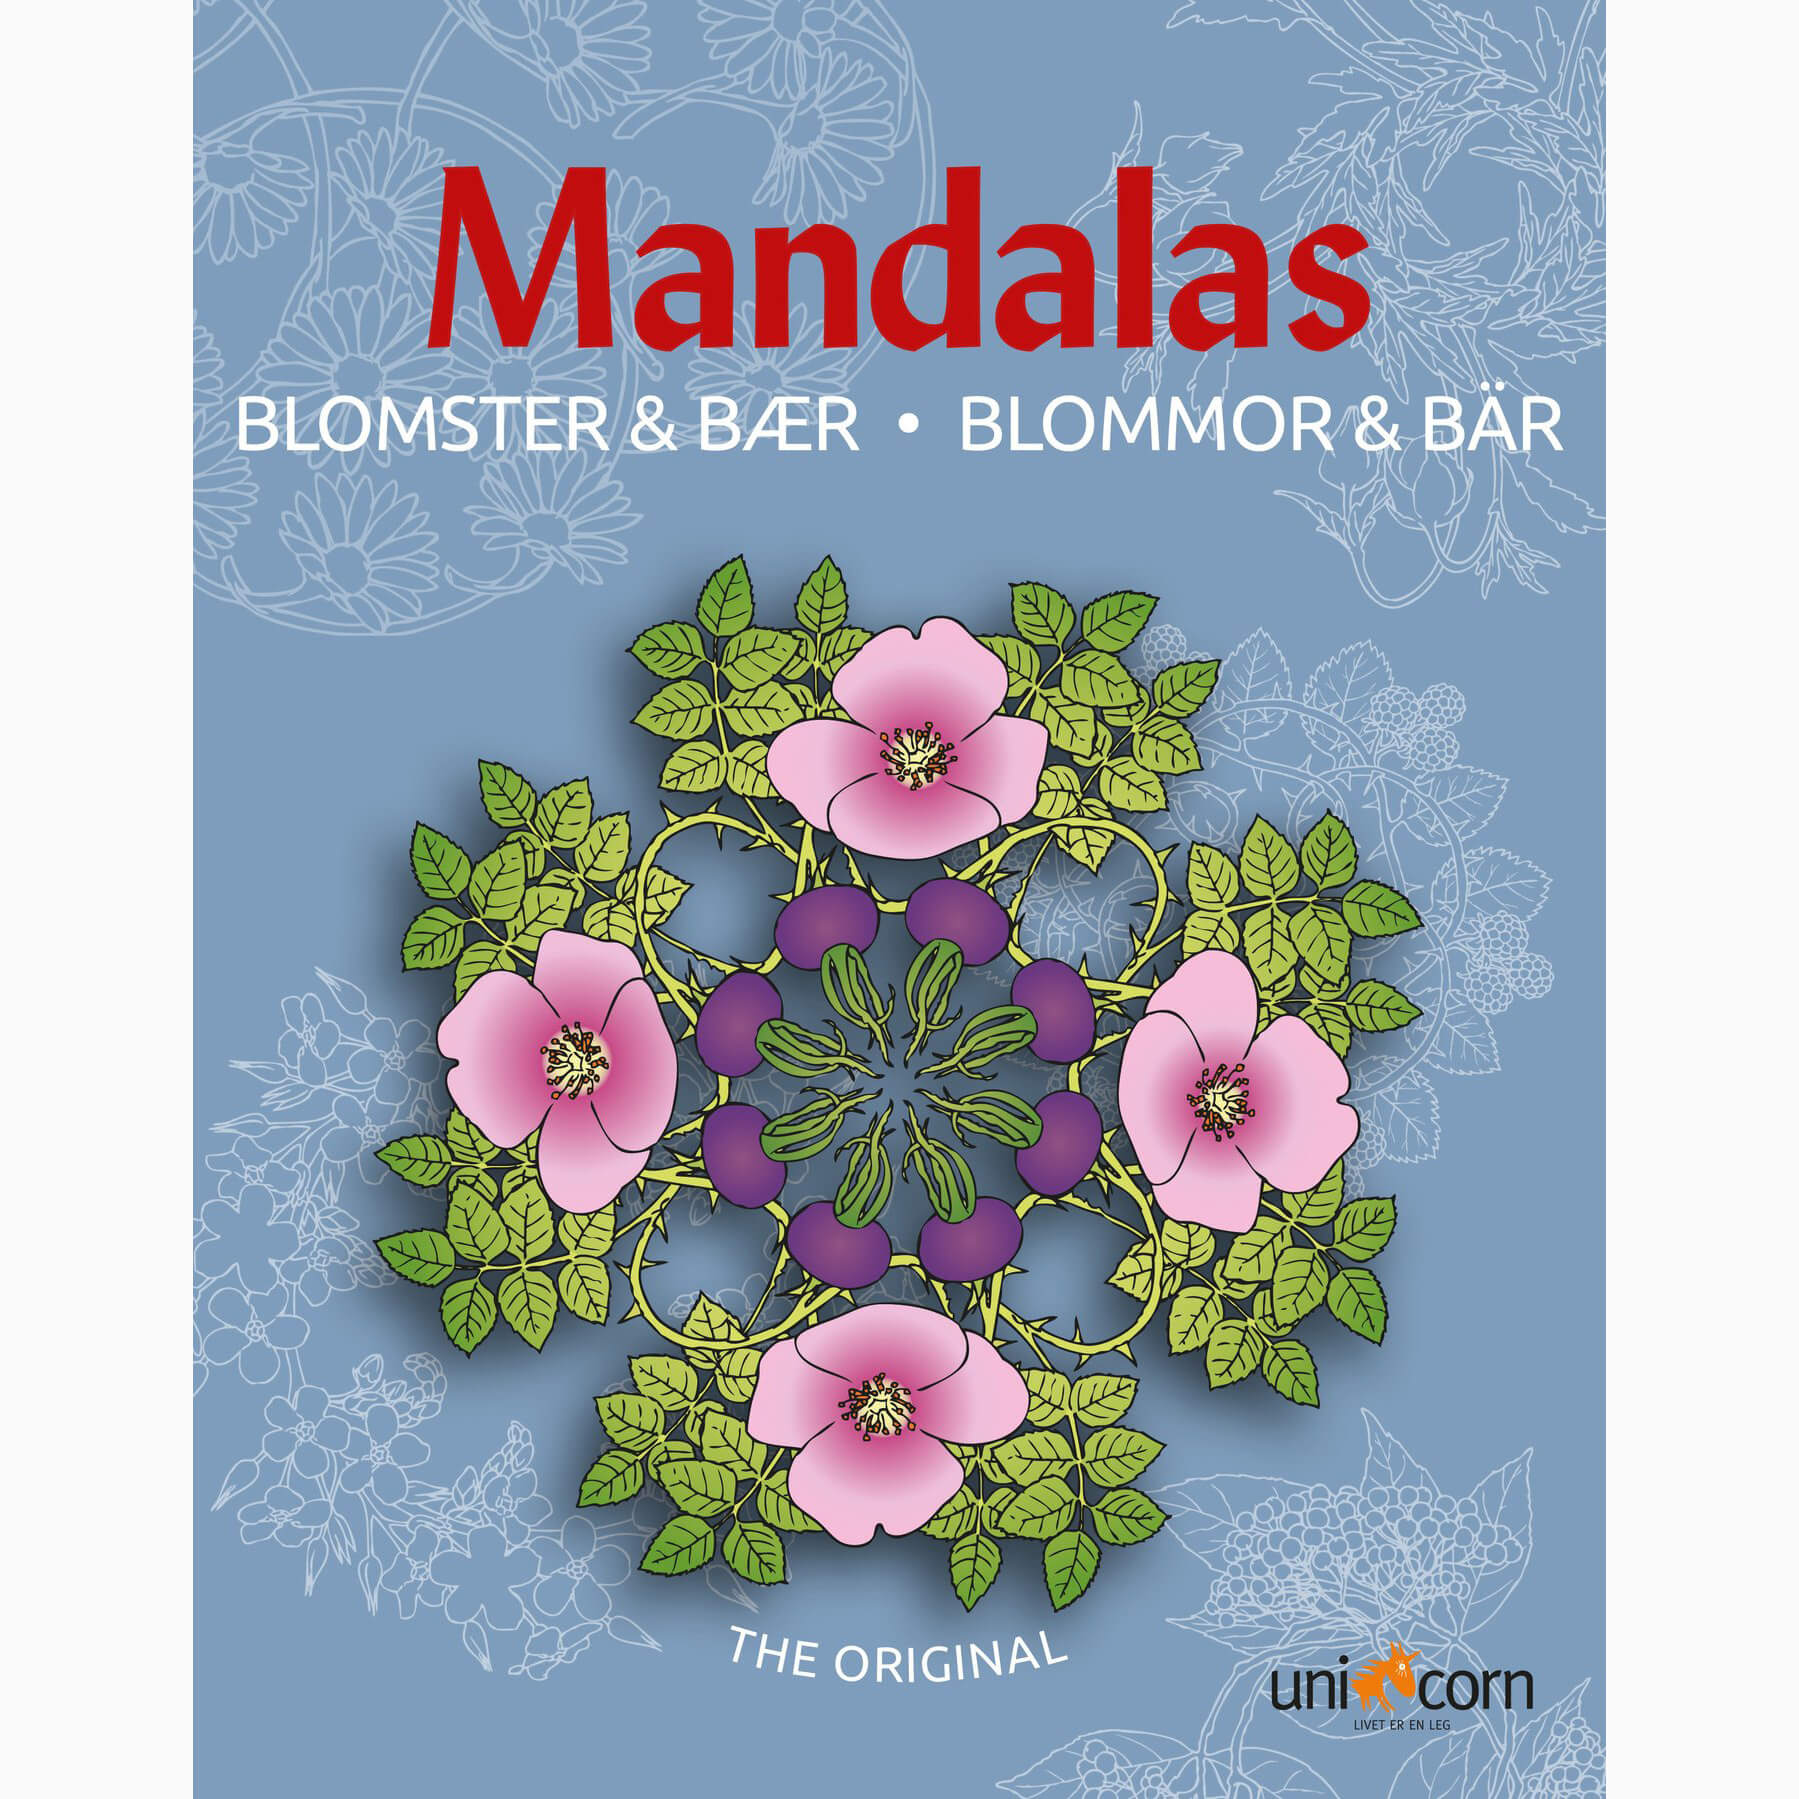 Mandalas - Malebog med Blomster & Bær